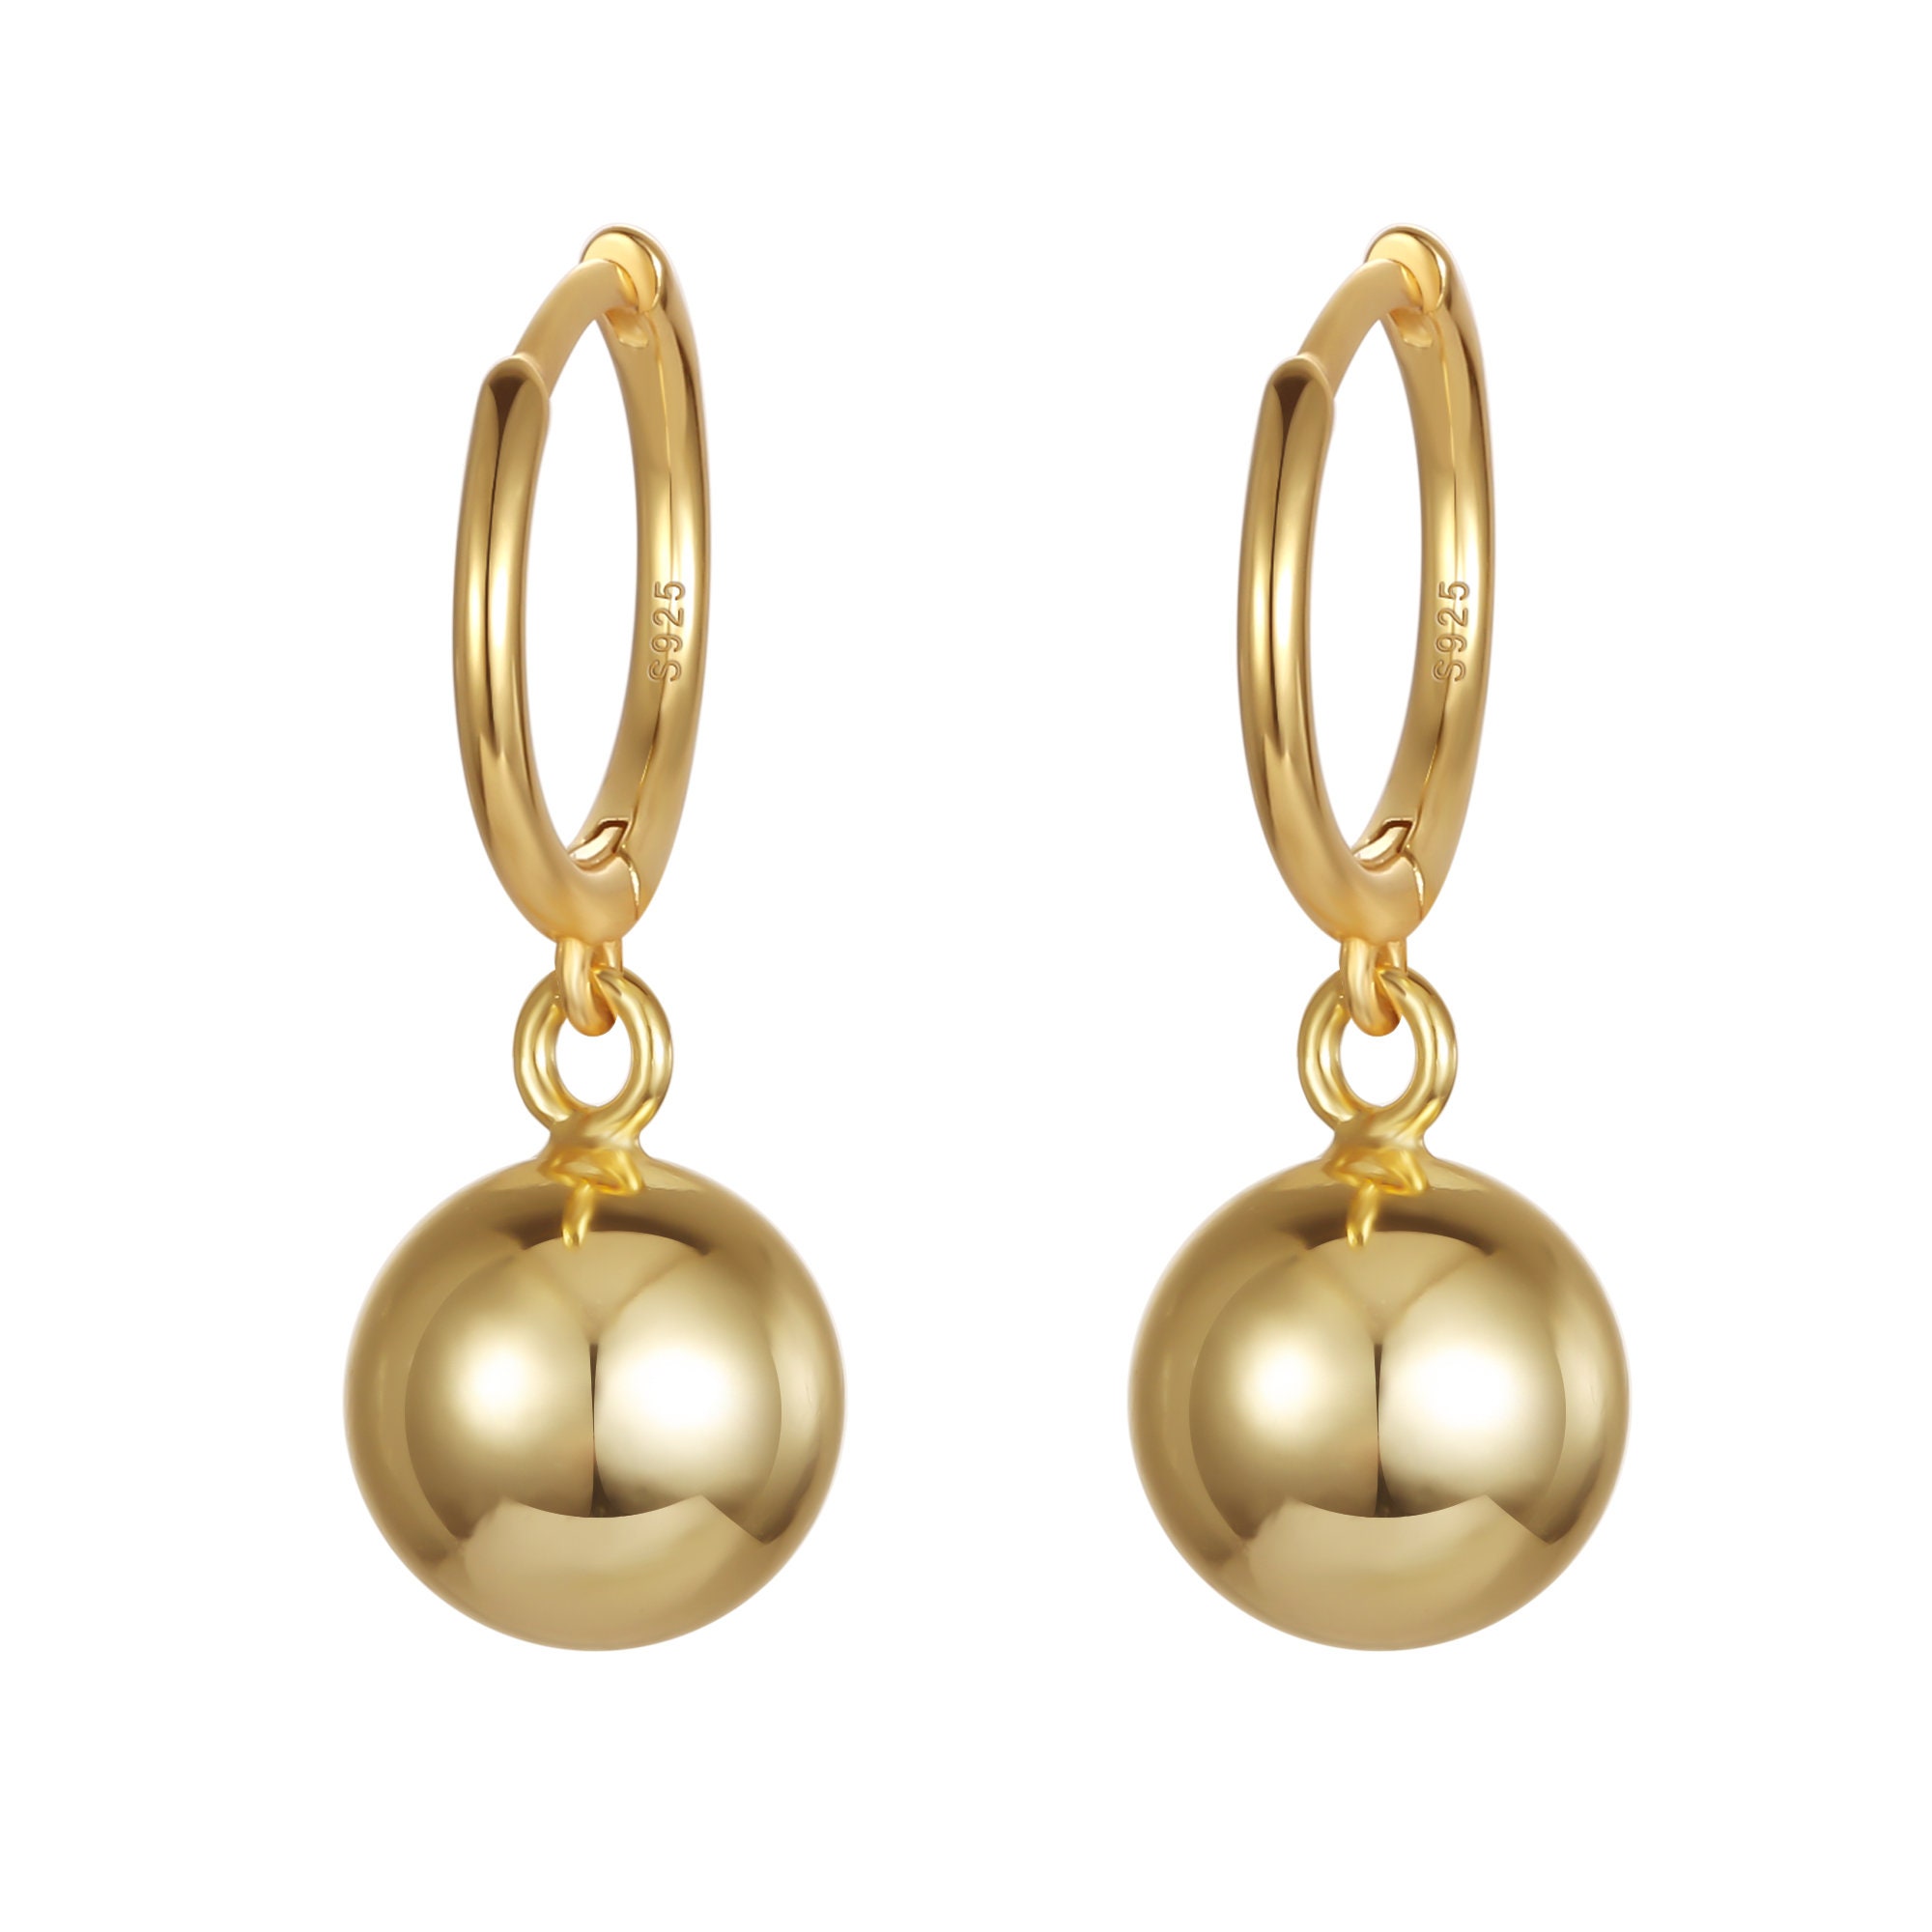 Triple Ball Earrings, .925 Sterling Silver Gold Dropdown Hypoallergenic Statement Ball Earrings Gold